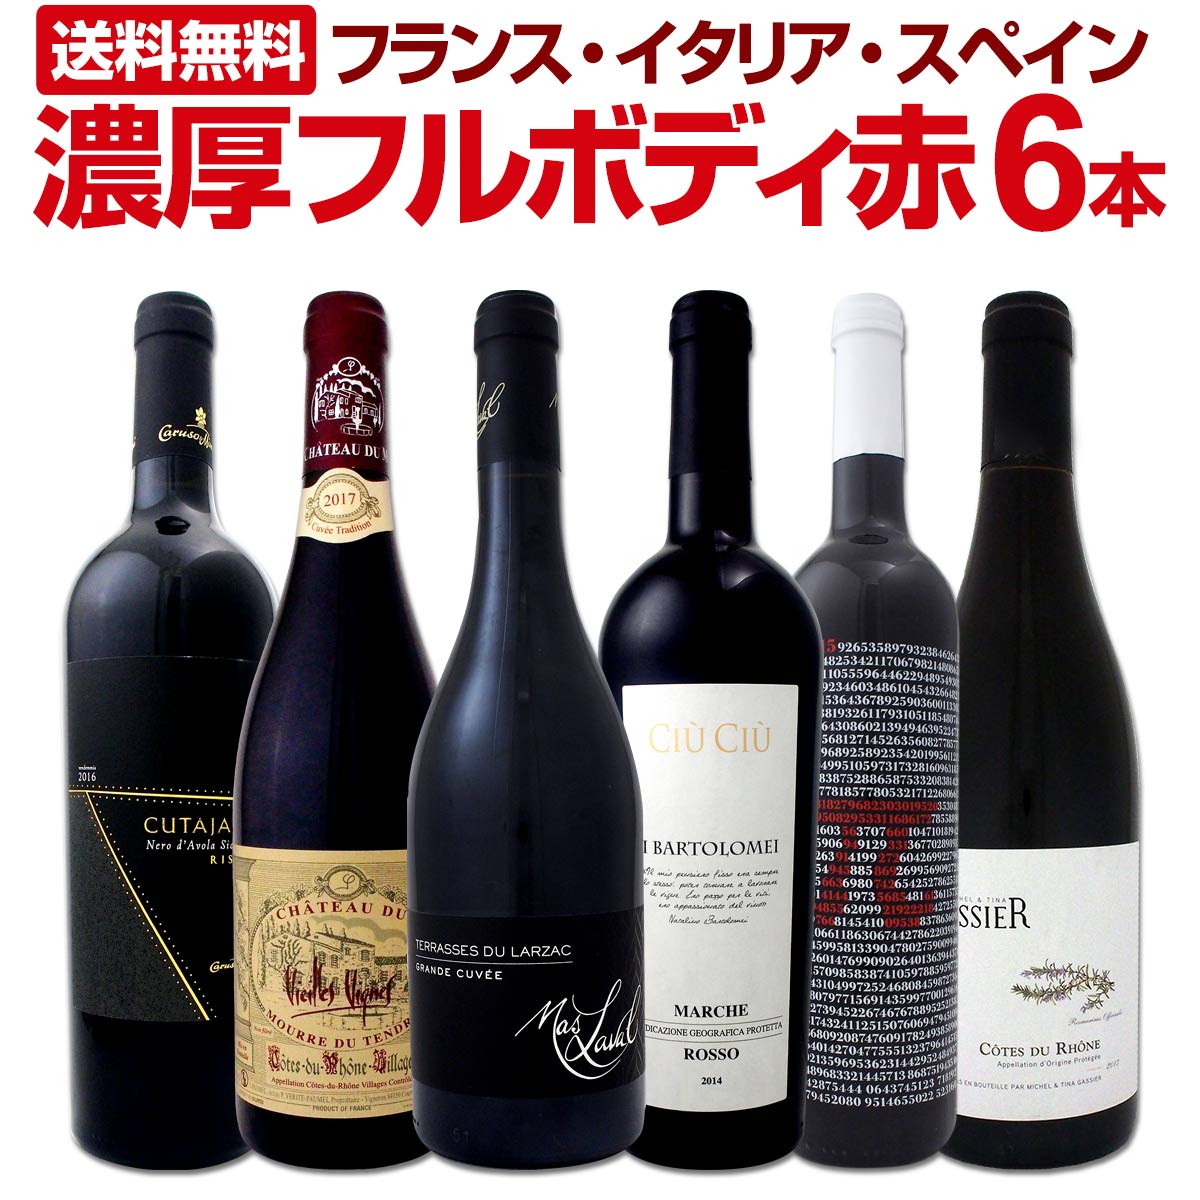 【送料無料】≪濃厚赤ワイン好き必見!≫大満足のフルボディ6本セット!